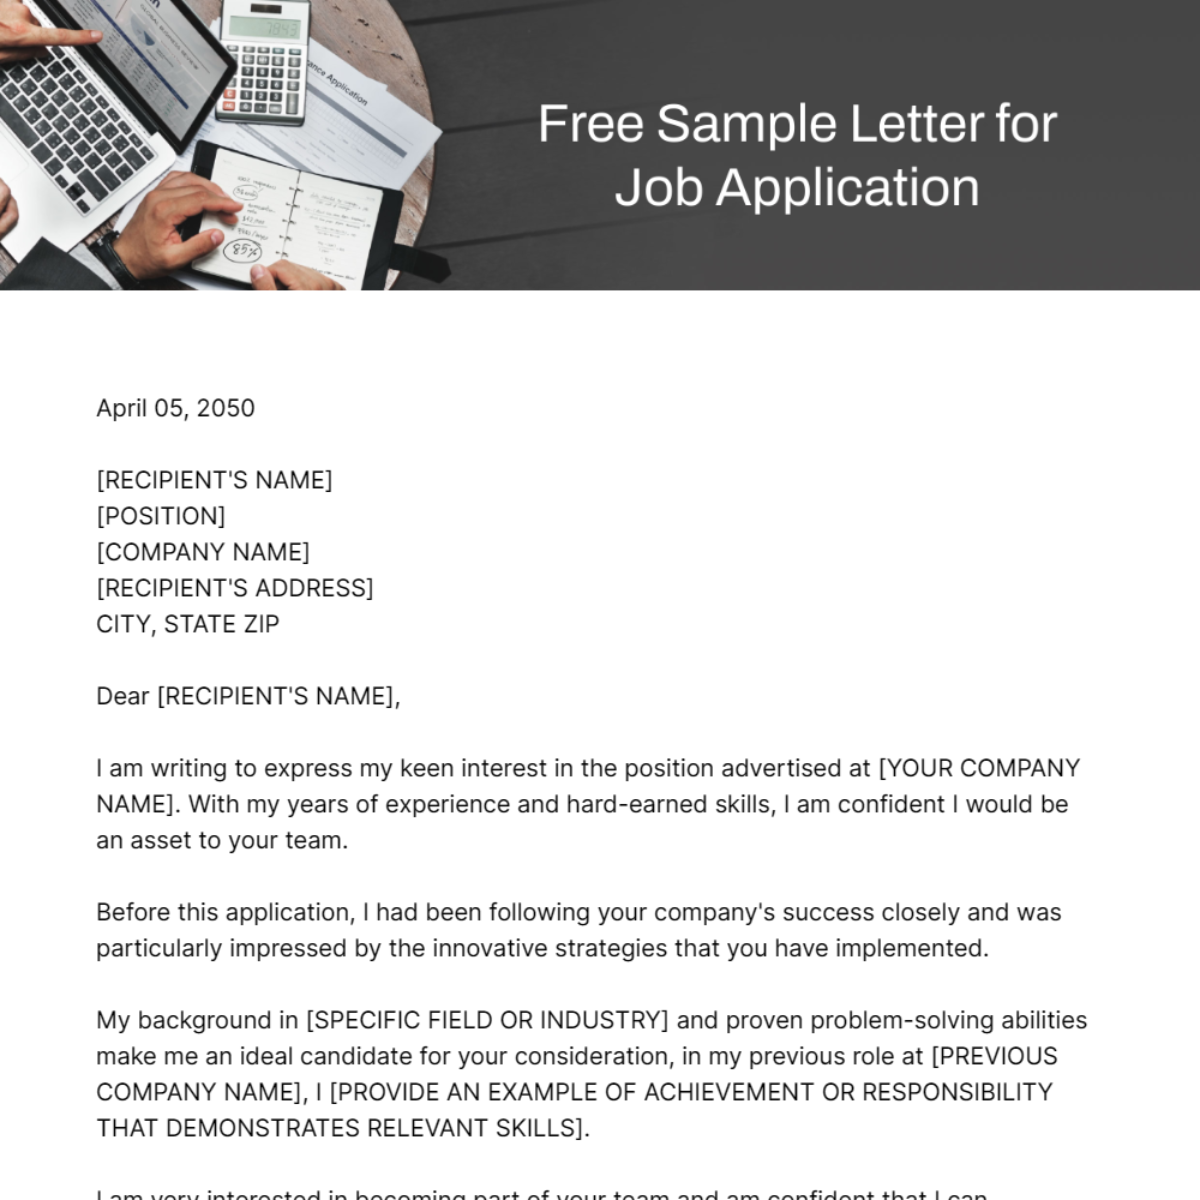 Sample Letter for Job Application Template